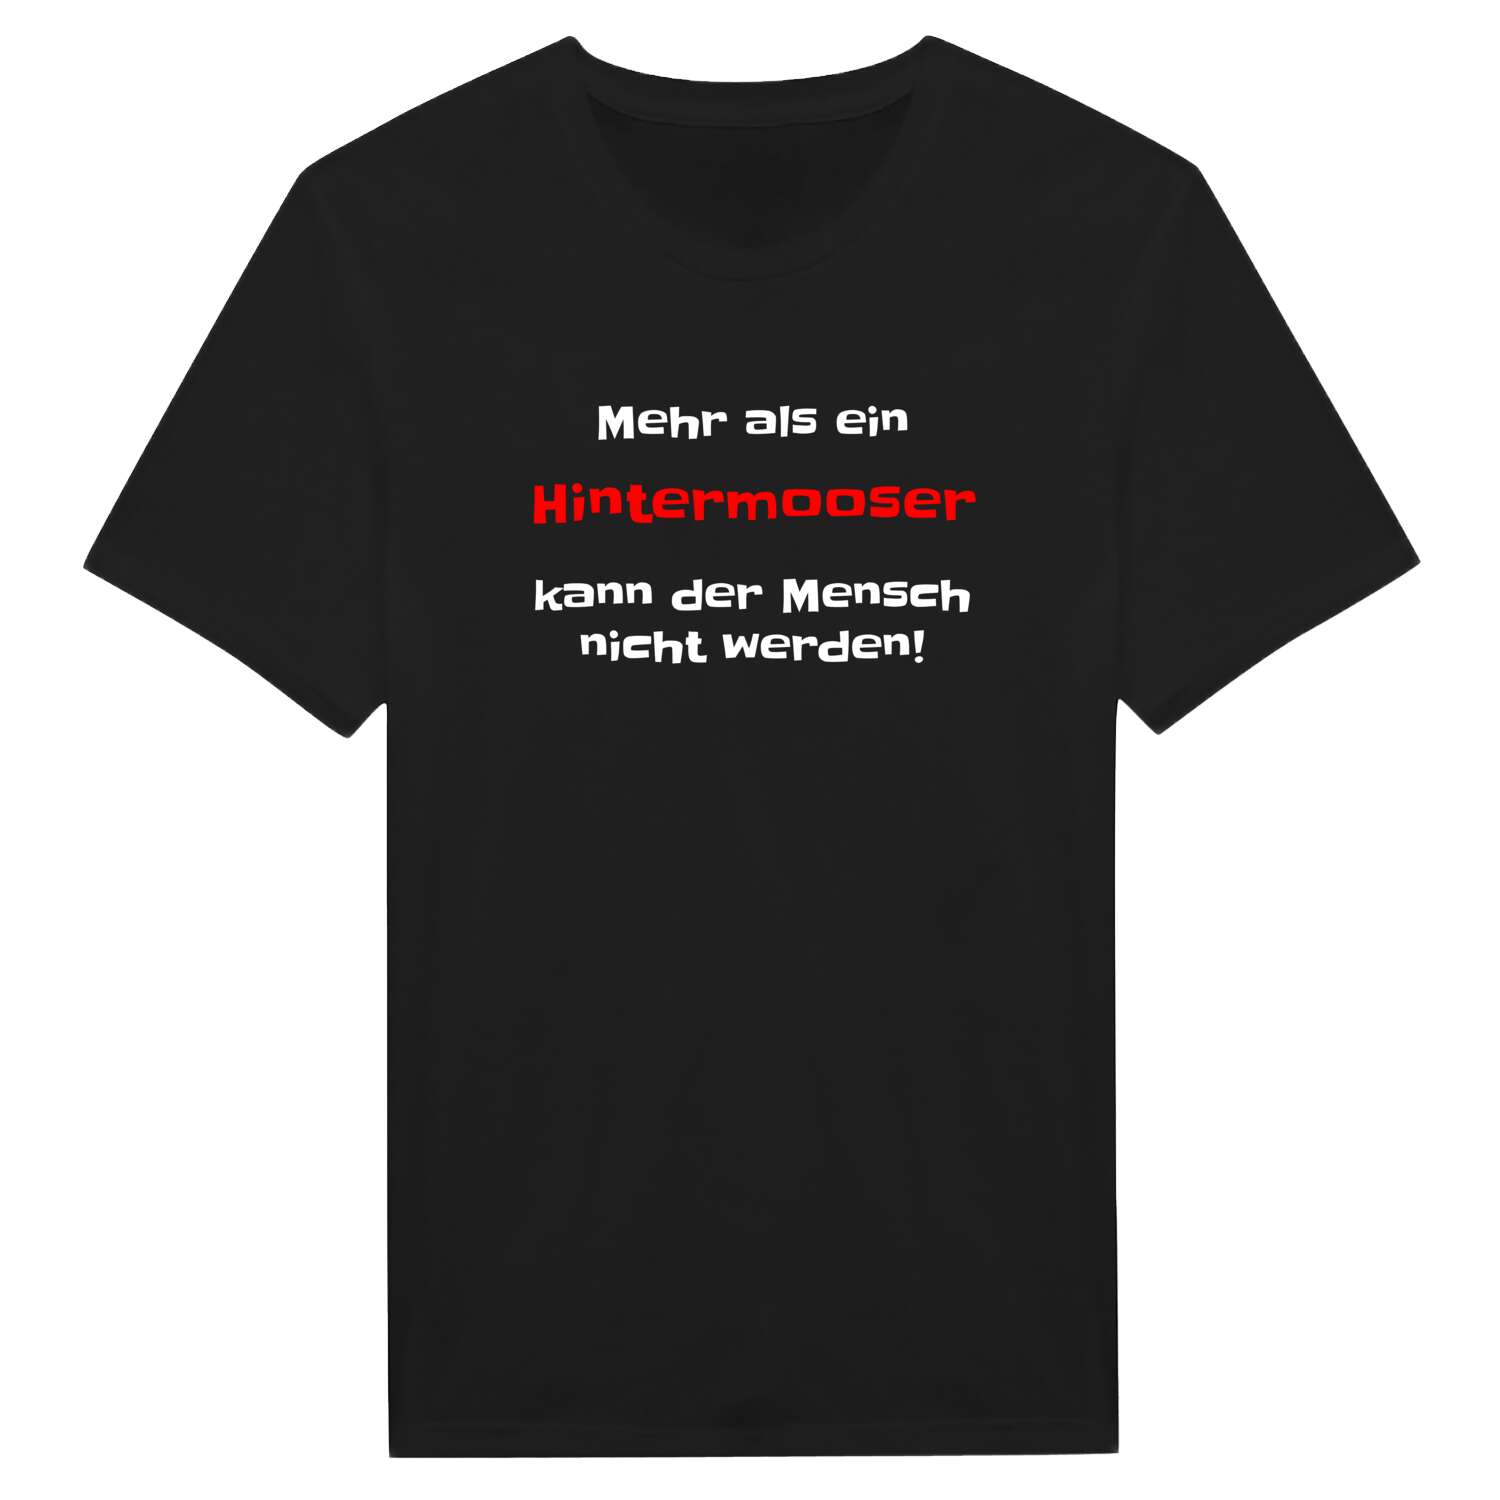 Hintermoos T-Shirt »Mehr als ein«